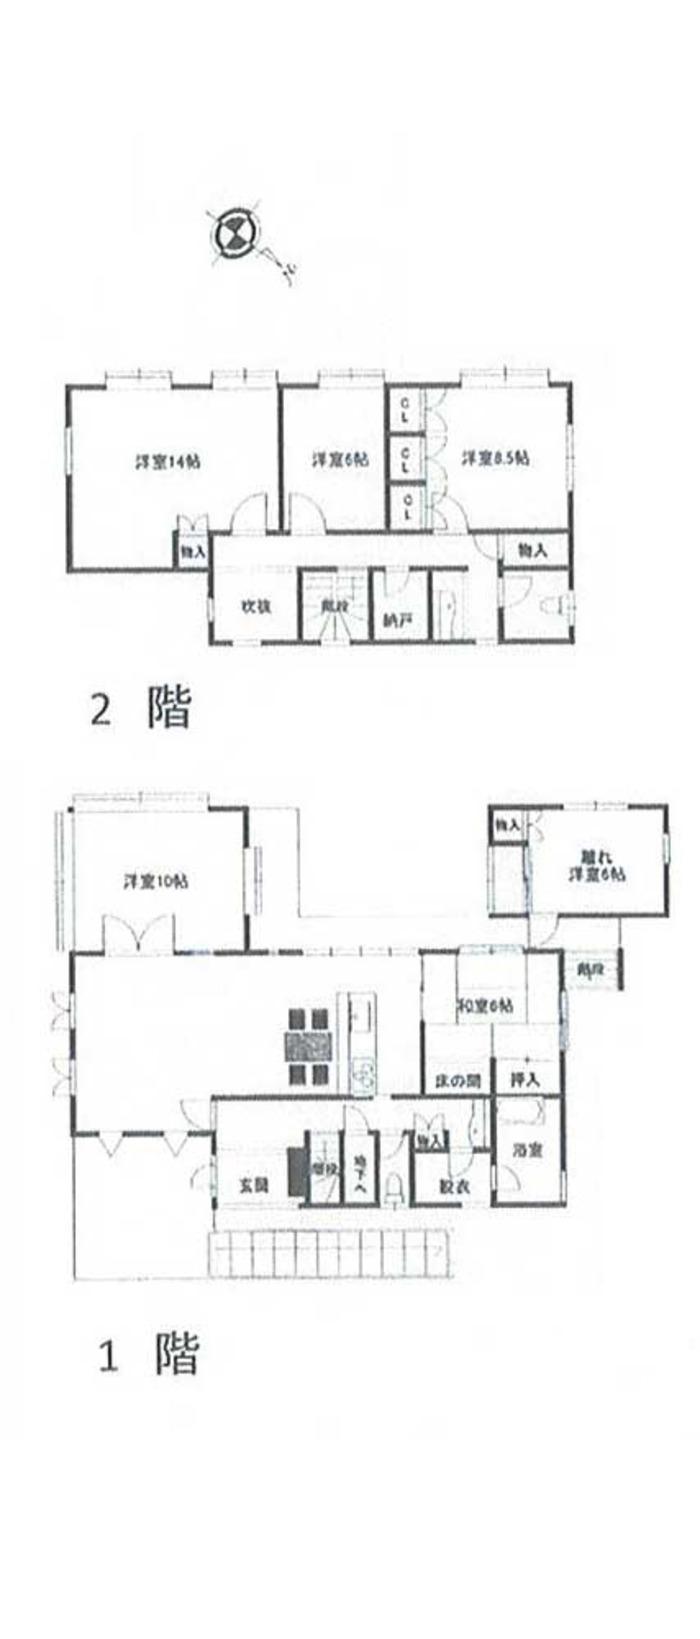 Floor plan. 25 million yen, 6LDK, Land area 377 sq m , Building area 160.34 sq m